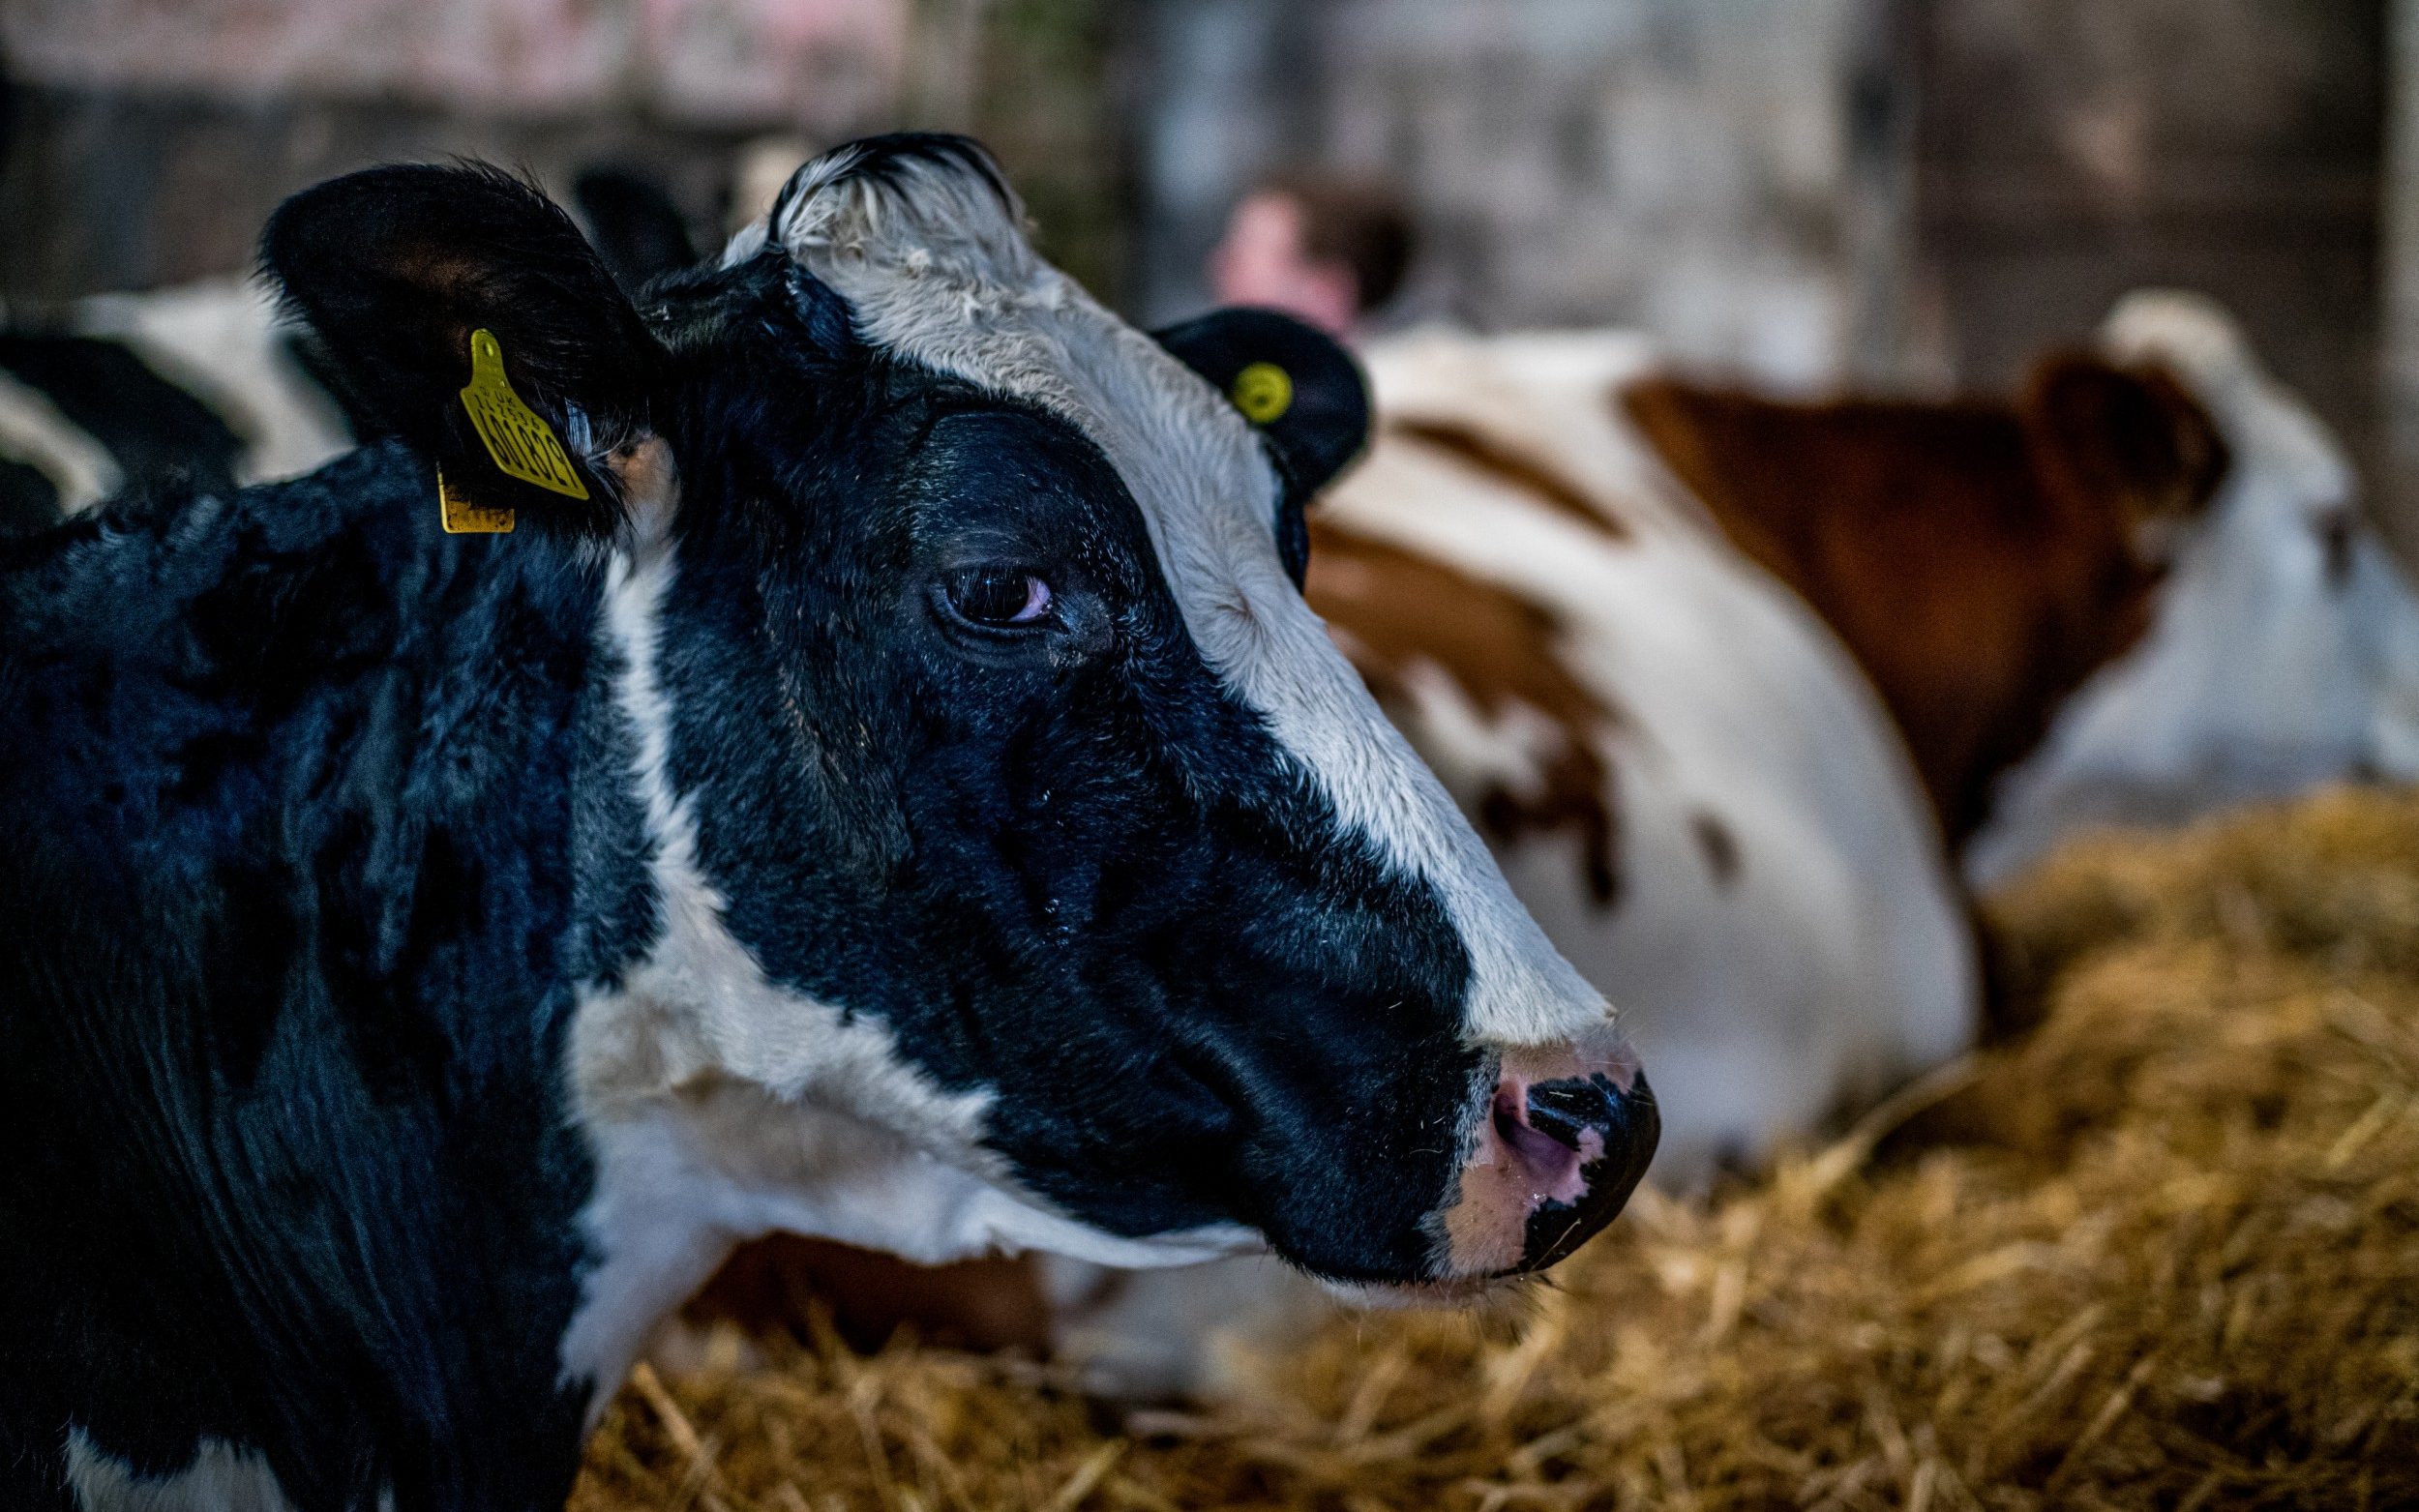 Ferma në Angli bëhet e njohur, vizitorët rezervojnë muaj më parë për të përkëdhelur lopët